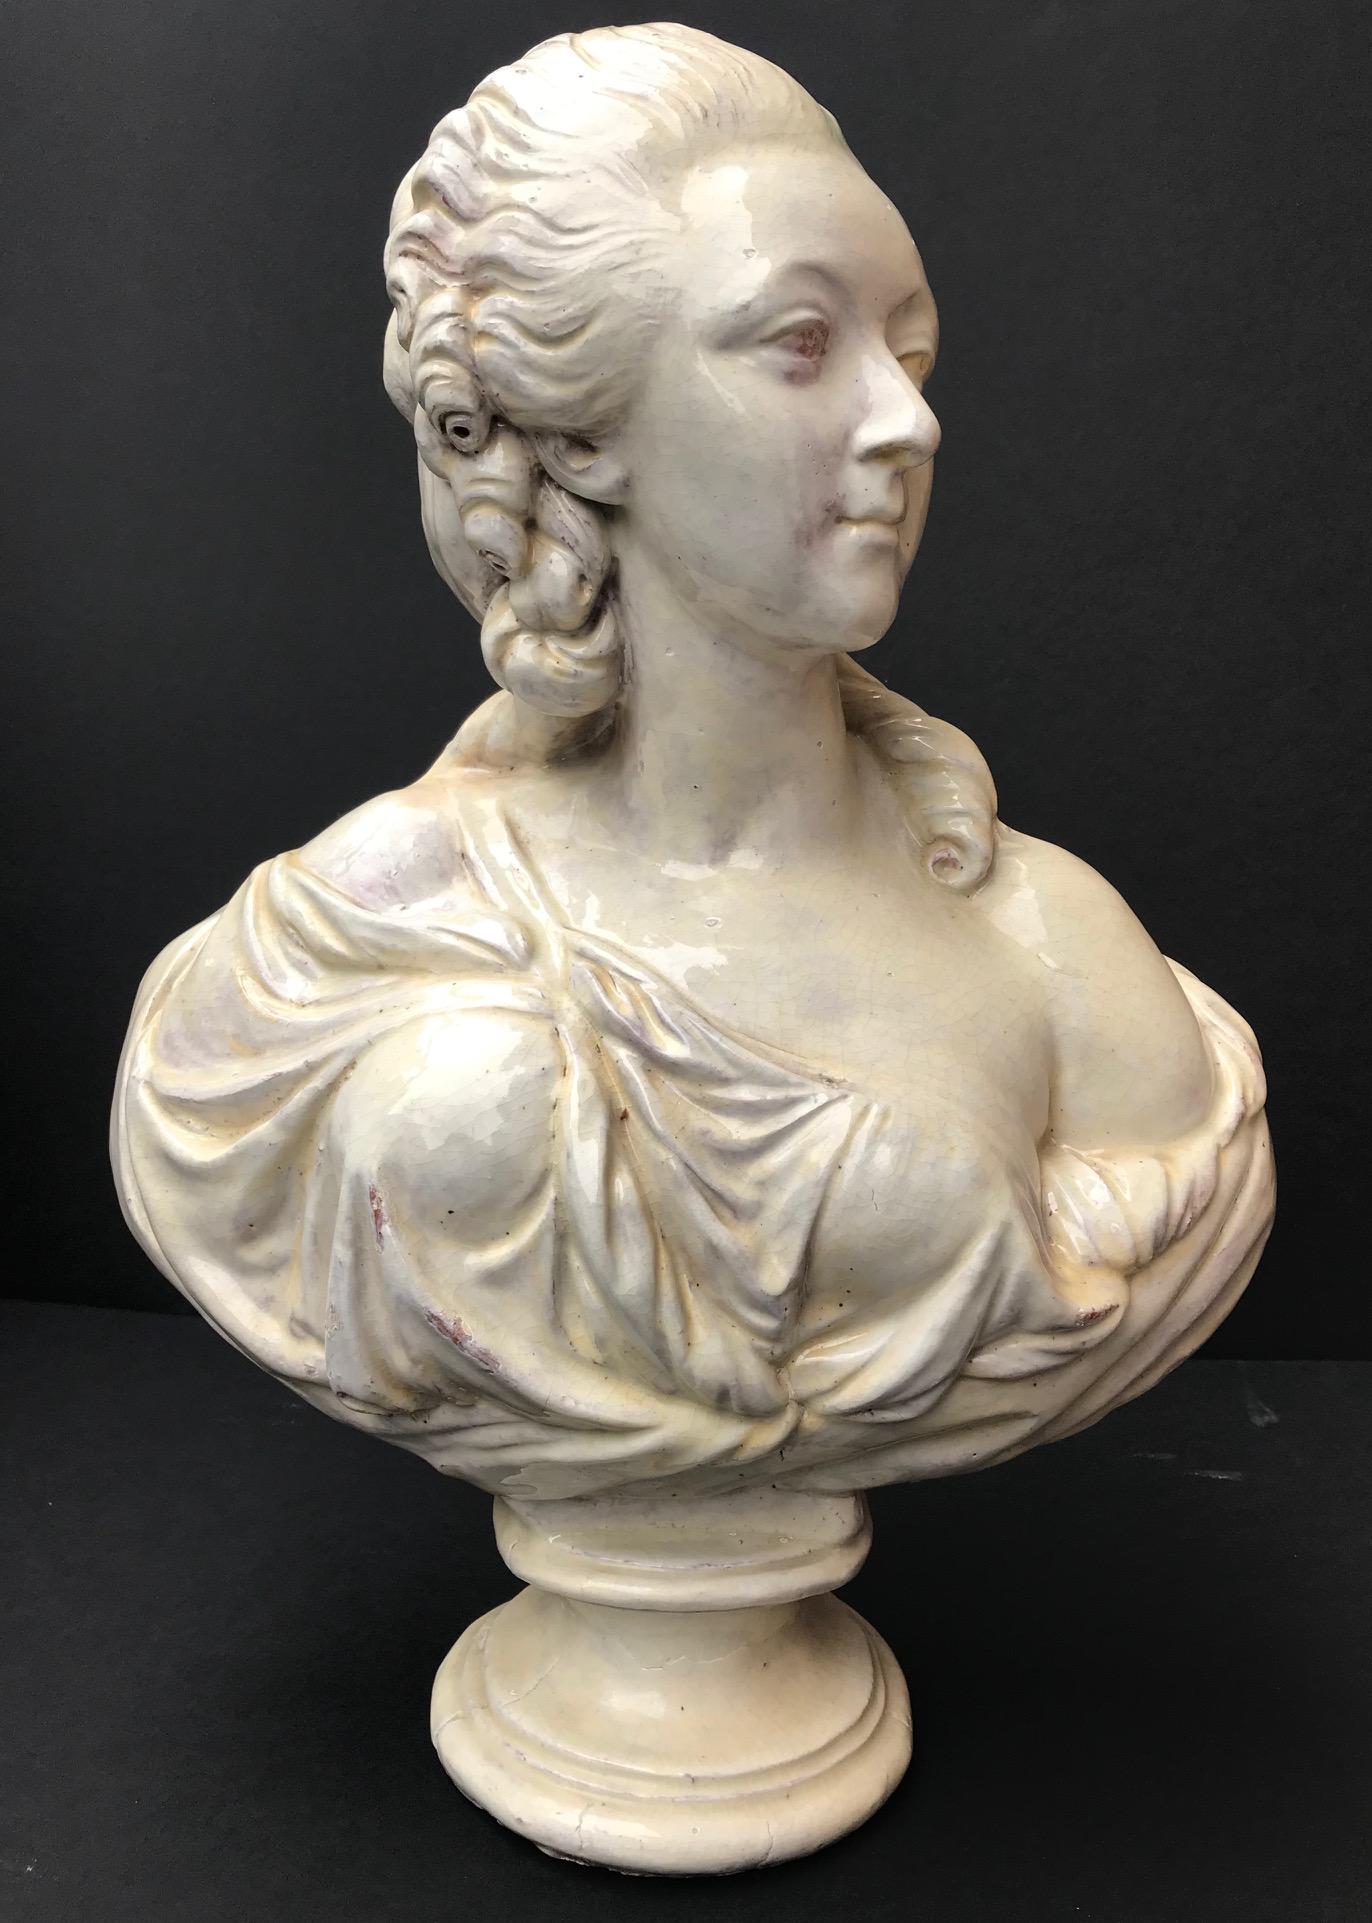 Diese große Büste, die die Gräfin du Barry darstellt, wurde nach dem Original aus dem 18. Jahrhundert von Augustin Pajou angefertigt. Es befindet sich in der Sammlung des Louvre. Er war der erste Bildhauer von König Ludwig XV. von Frankreich. Der